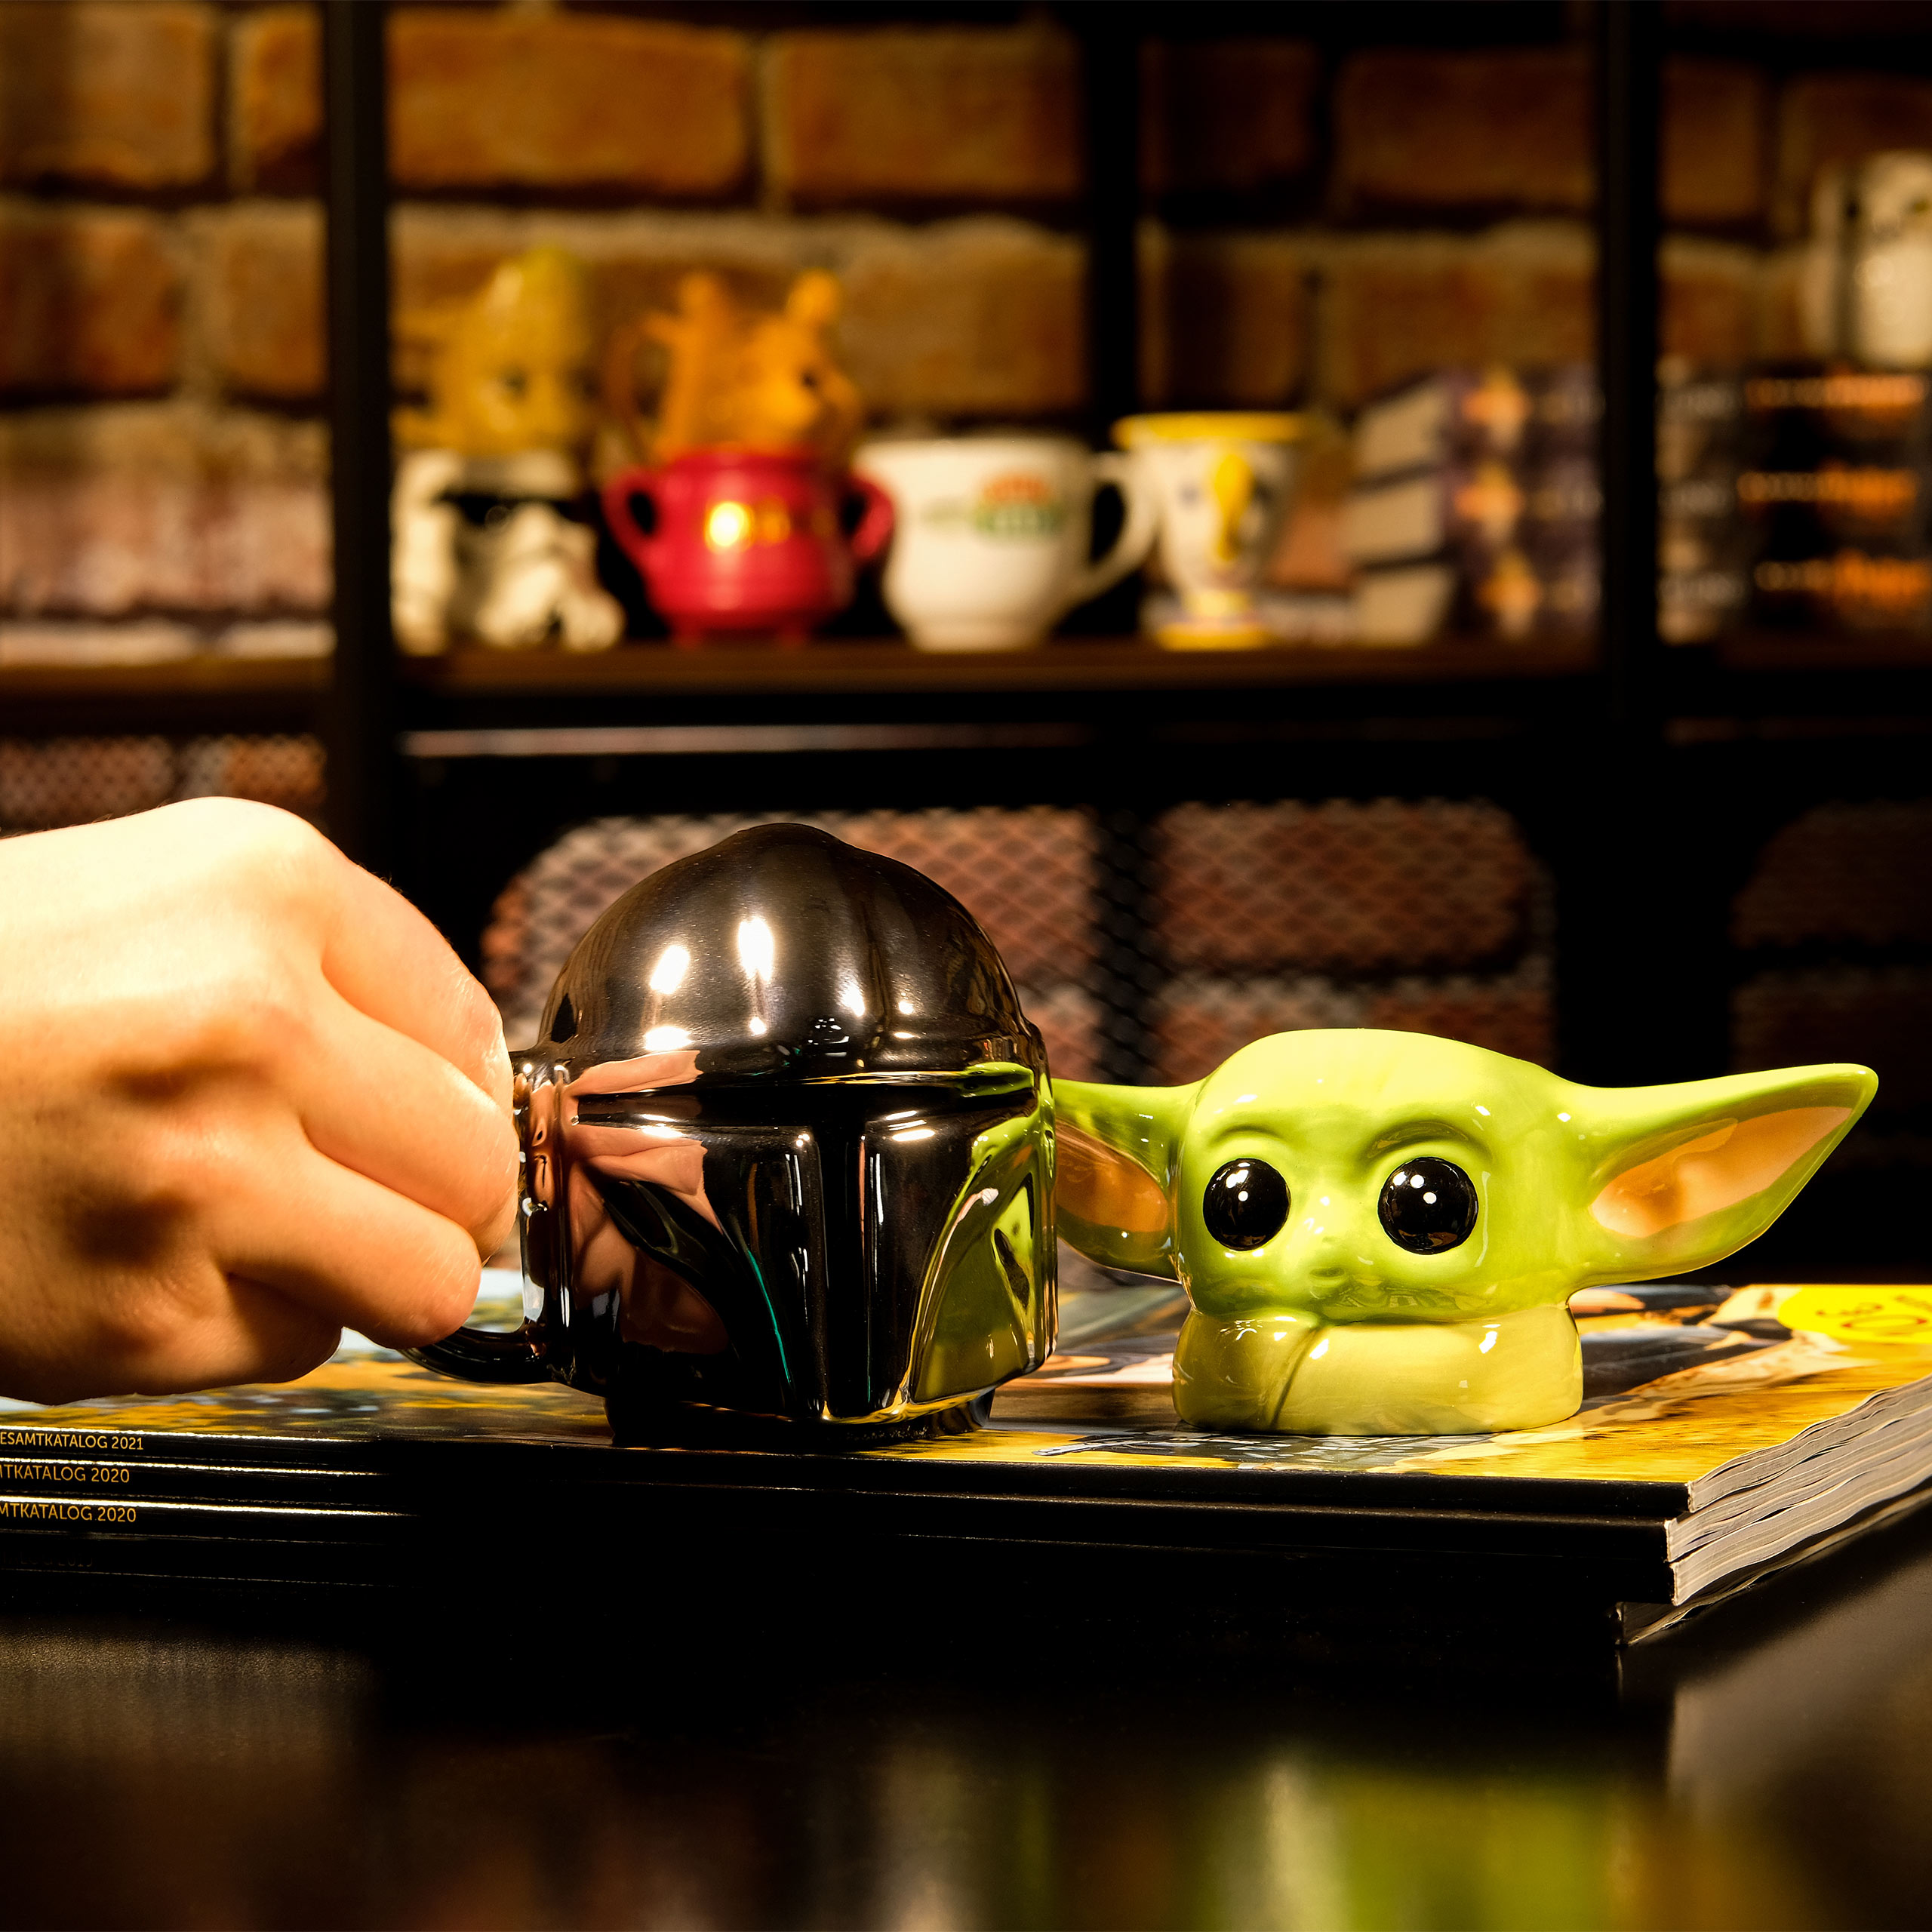 Tasse Espresso Grogu 3D - Star Wars The Mandalorian